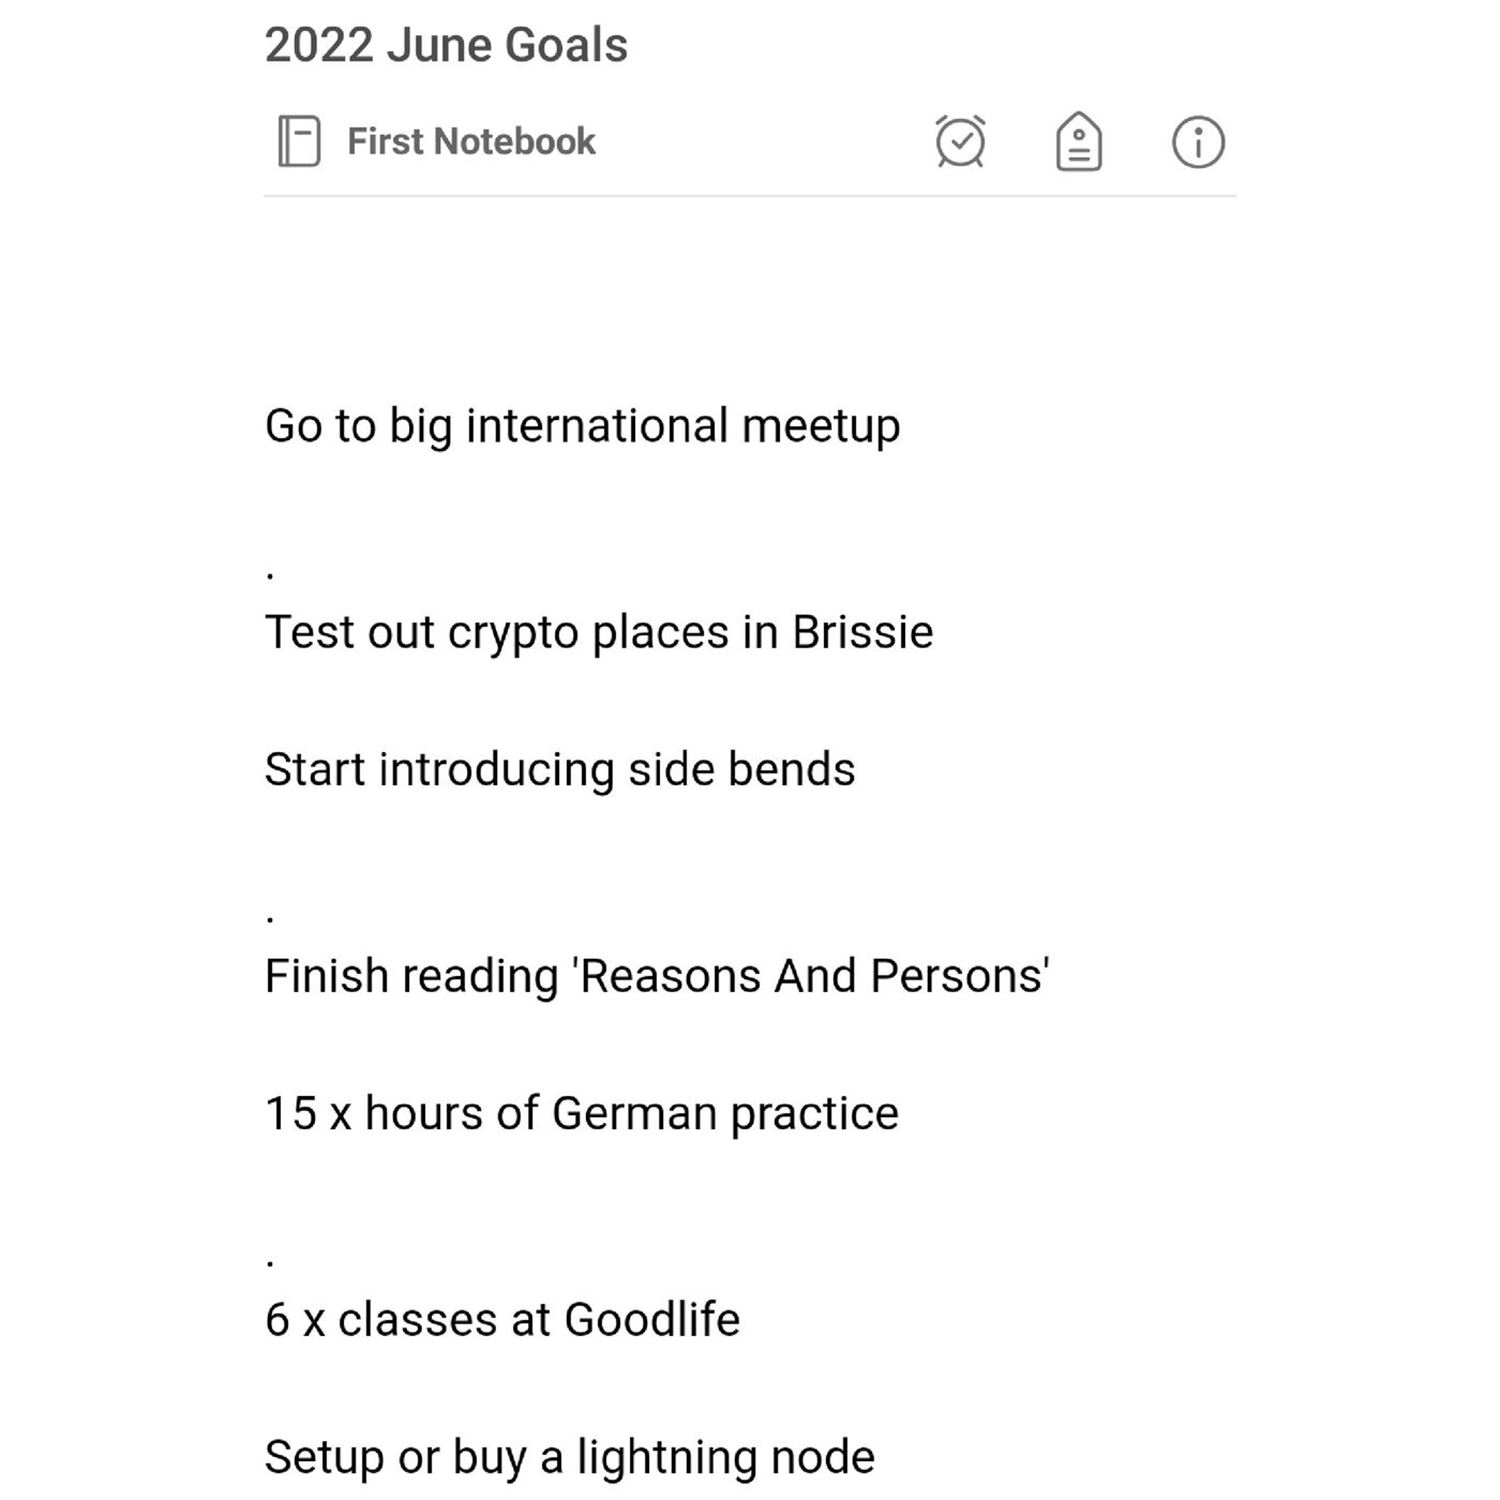 Kyrin's June Goals